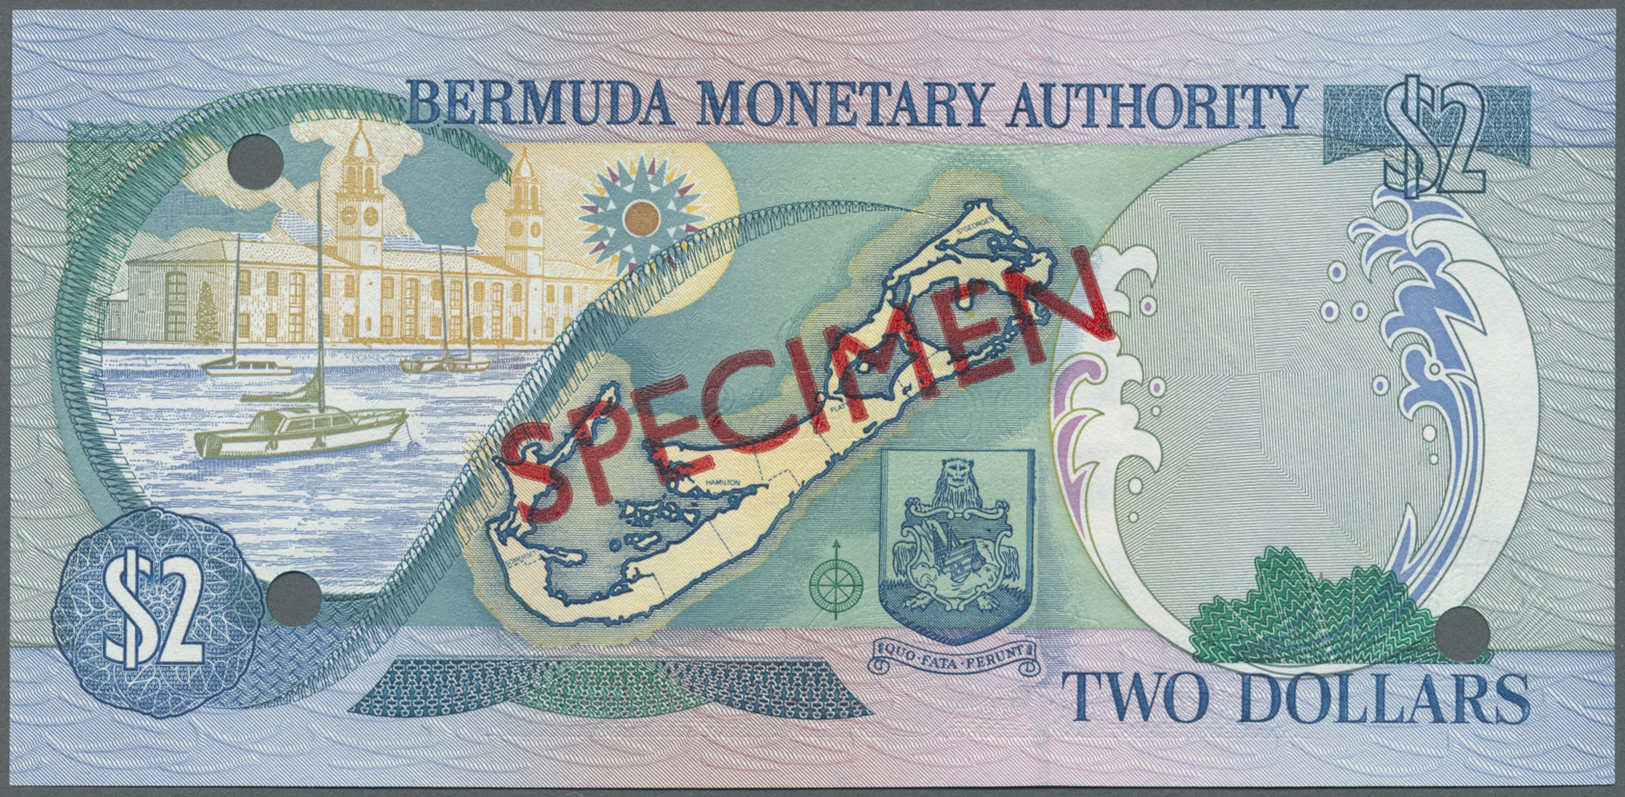 00314 Bermuda: complete set of 1 - 100 Dollars 2000 Specimen P. CS2, all in condition: UNC. (6 pcs)